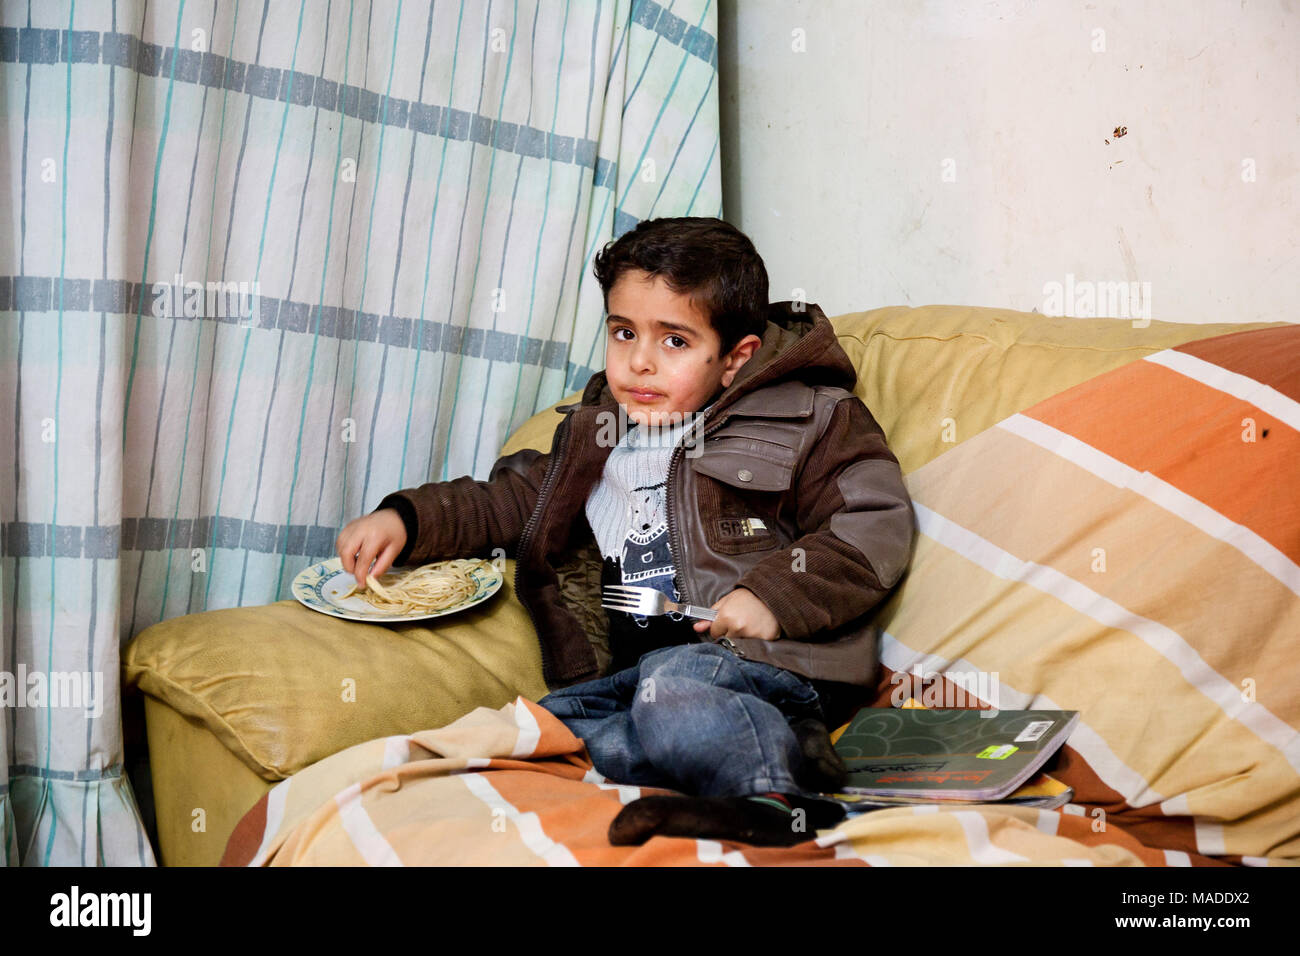 Bilin, Palestina, 7 Gennaio 2011: ragazzo palestinese sta avendo un pranzo nella sua casa. Foto Stock